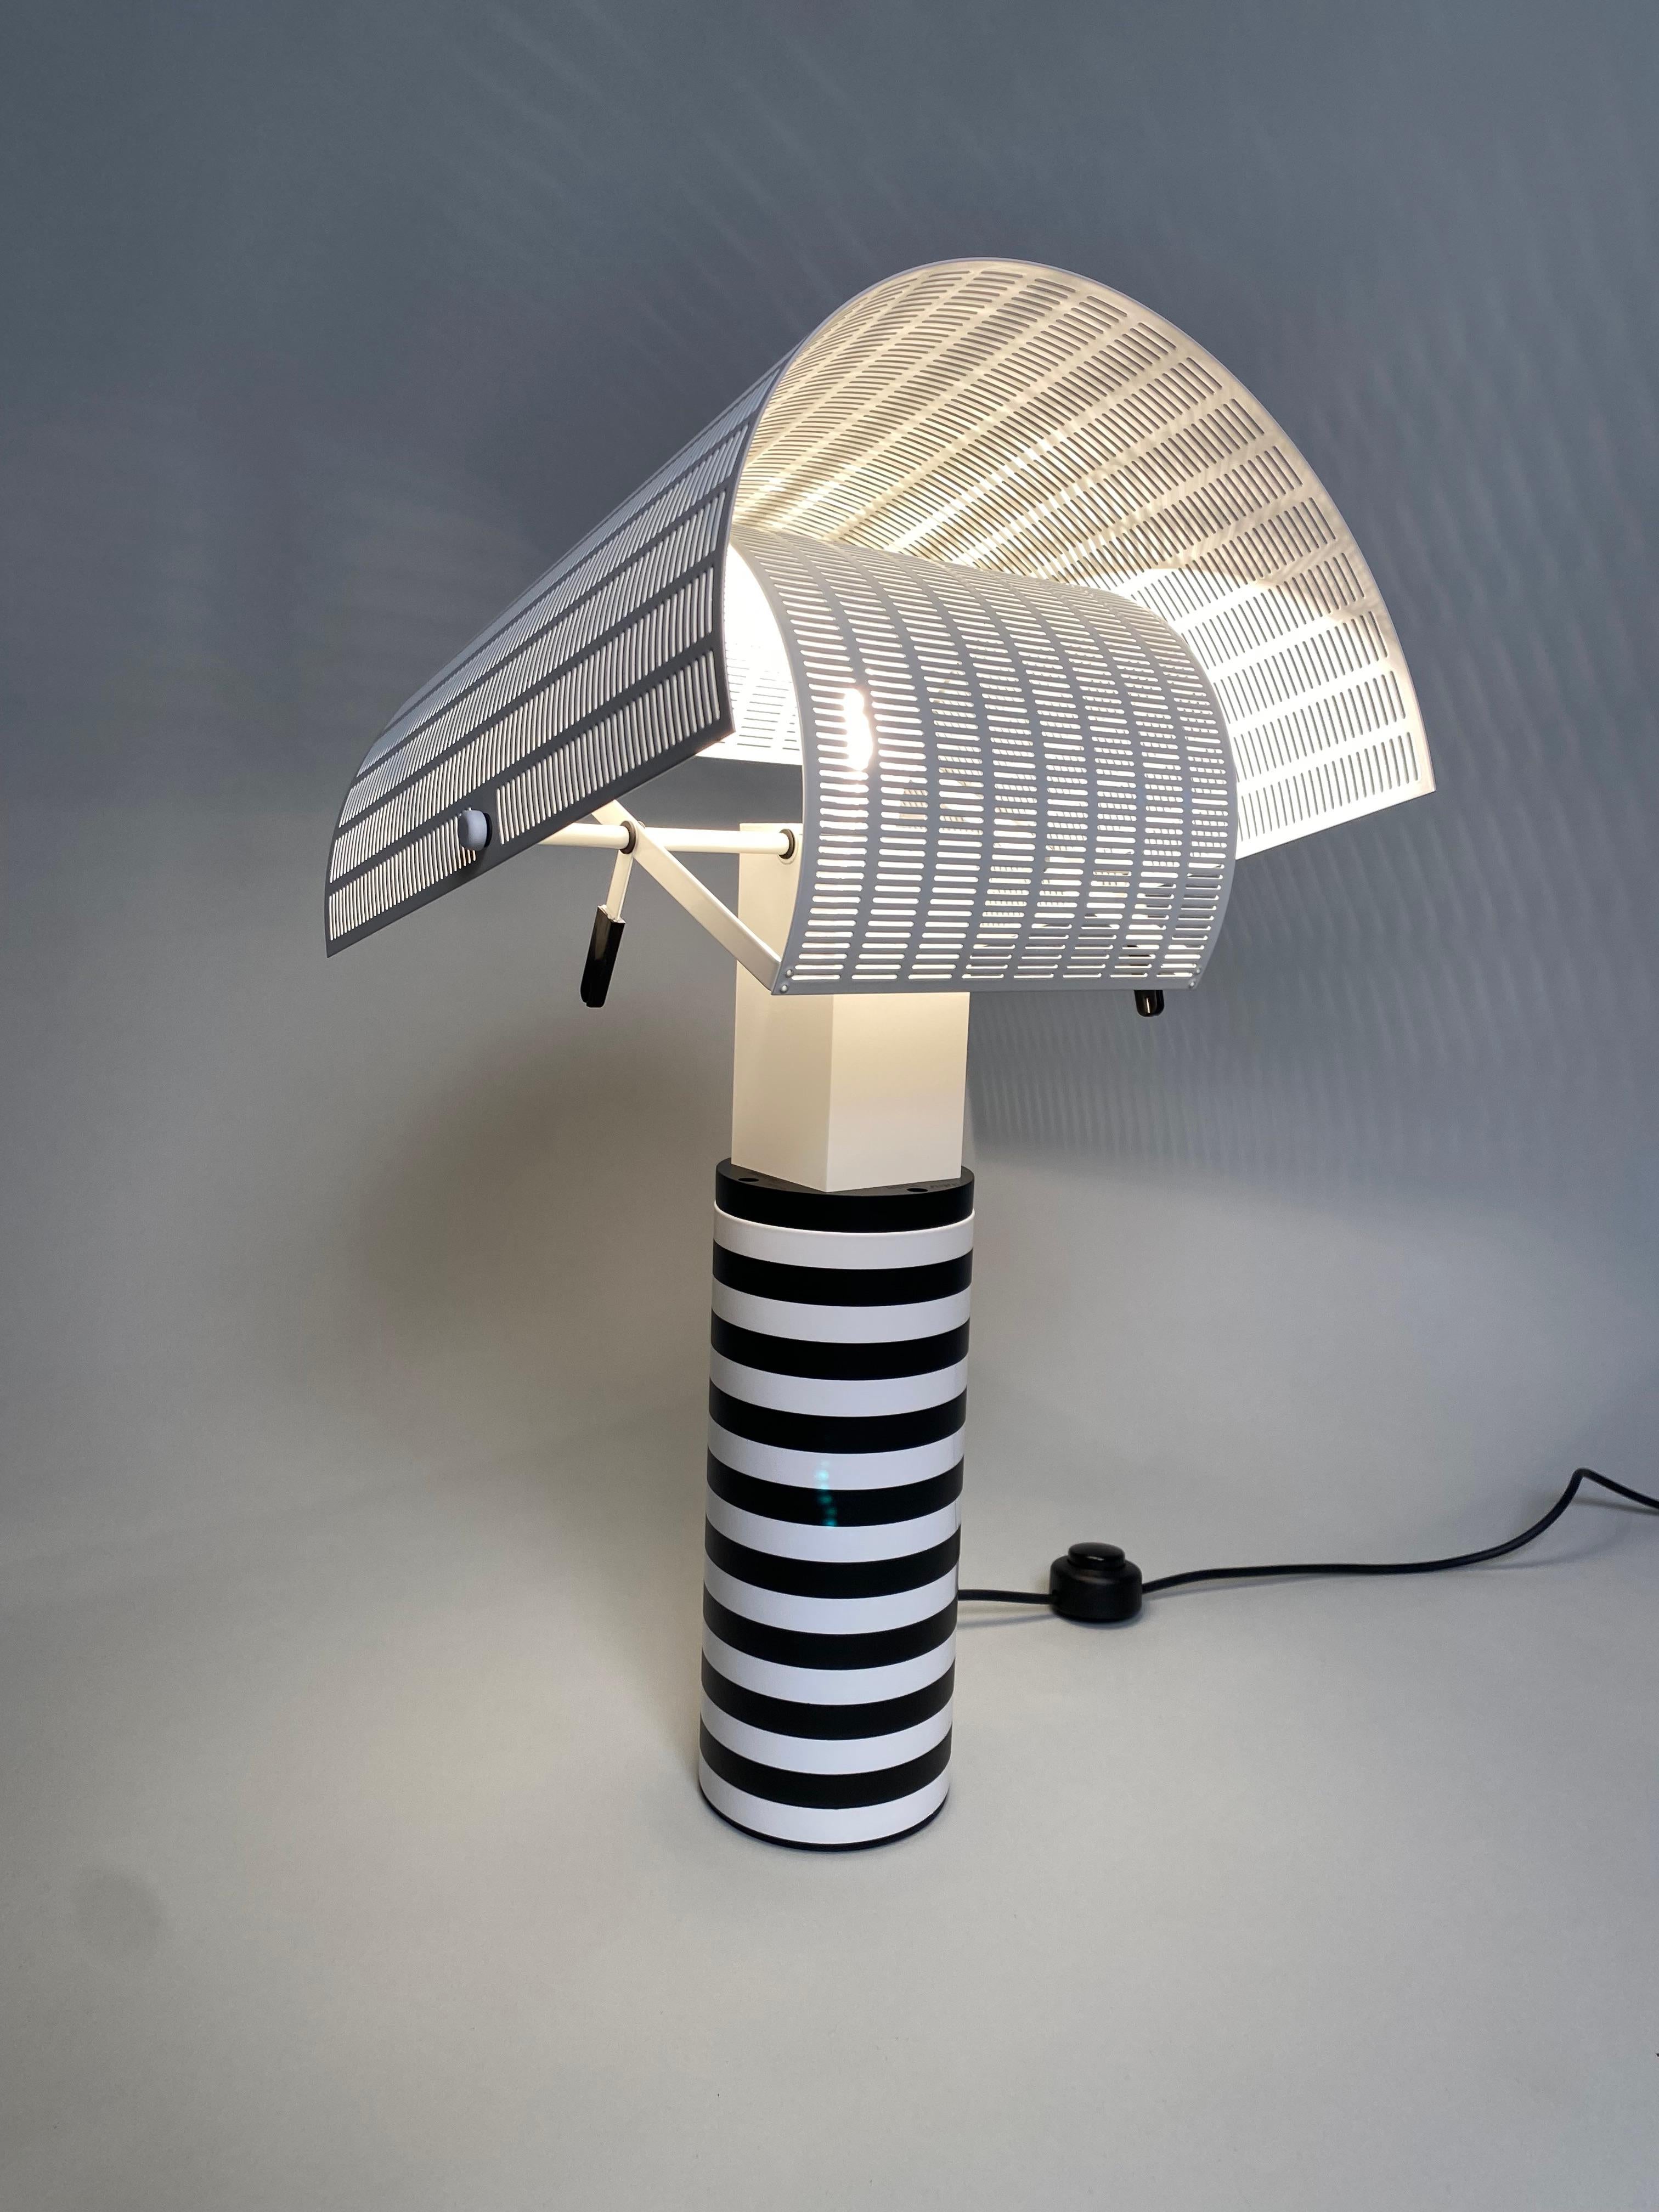 Paire de lampes de table postmodernes du célèbre architecte Mario Botta. L'abat-jour réglable en métal peint reproduit le chapeau des shoguns japonais, dont il tire son nom. Il est très pratique pour orienter le faisceau lumineux dans la direction